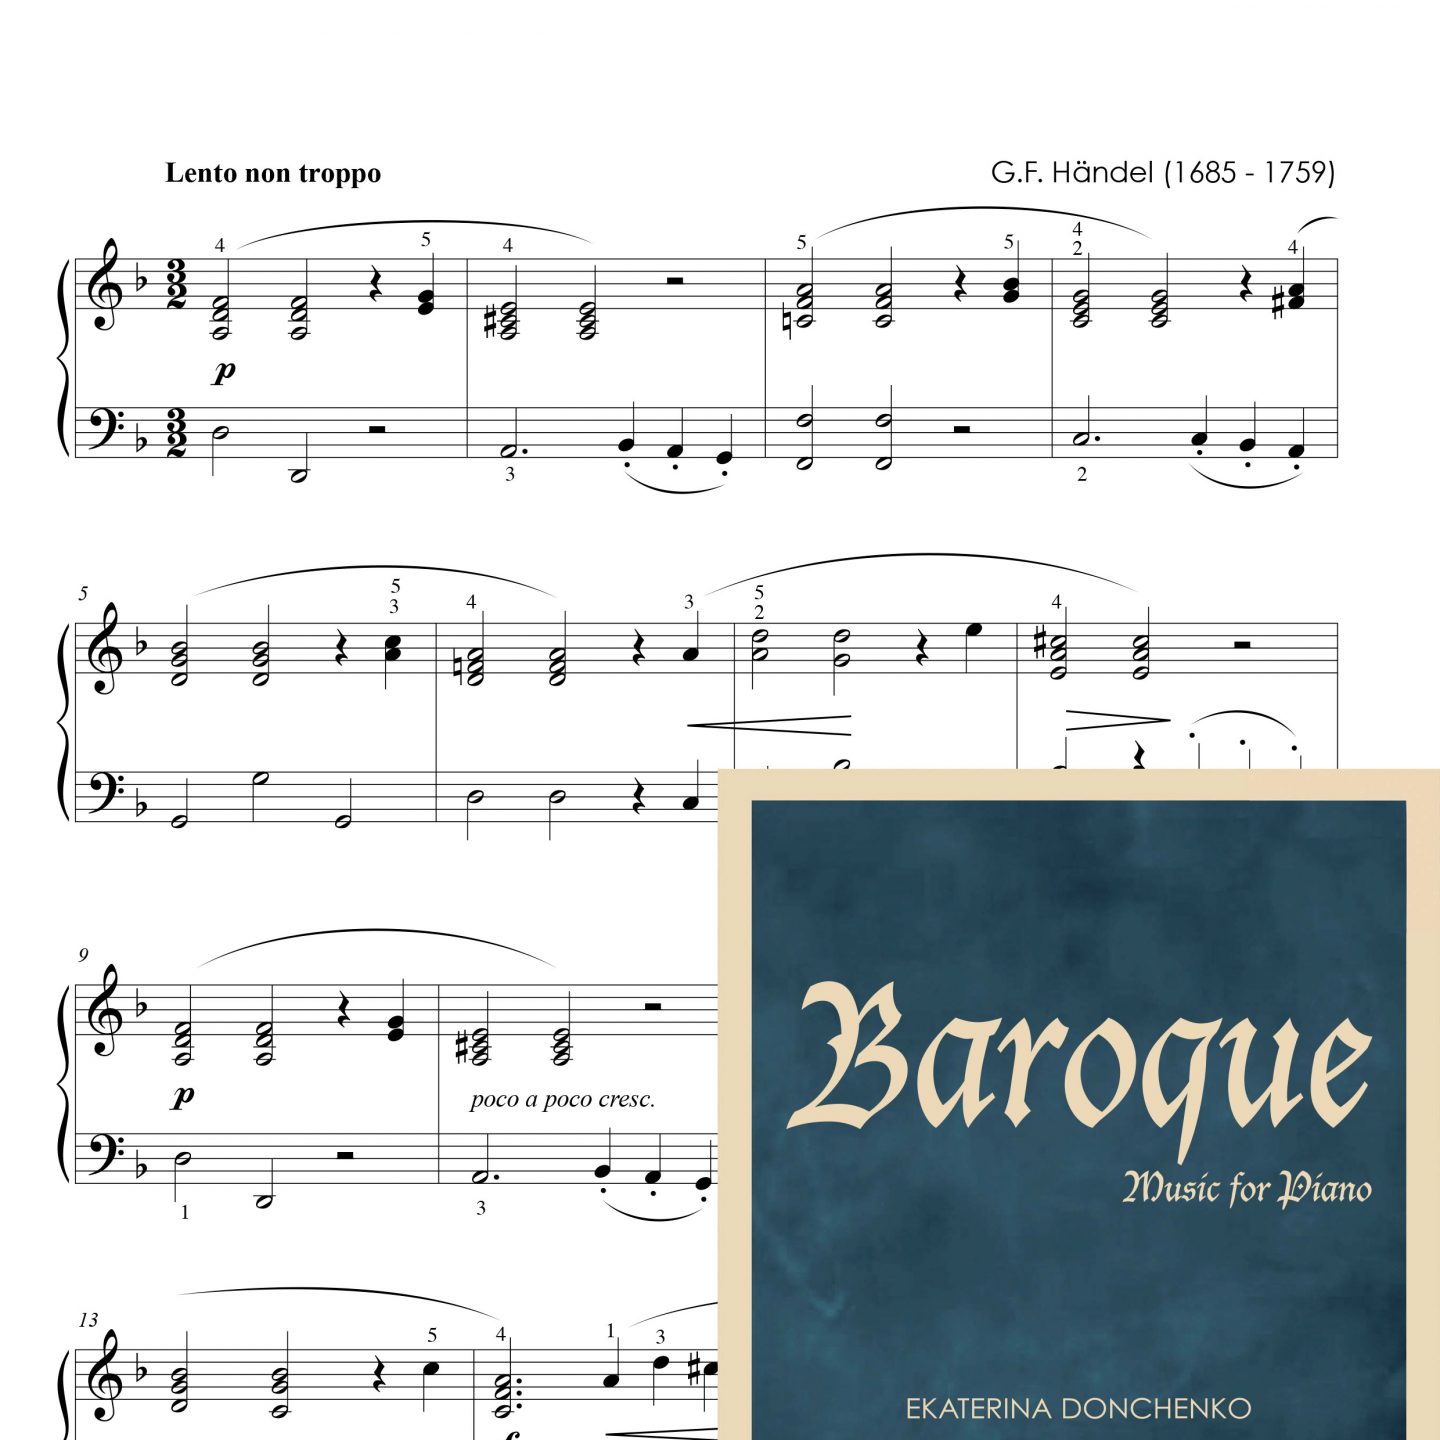 9. Händel, G.F. “Sarabande and Variations in D minor”